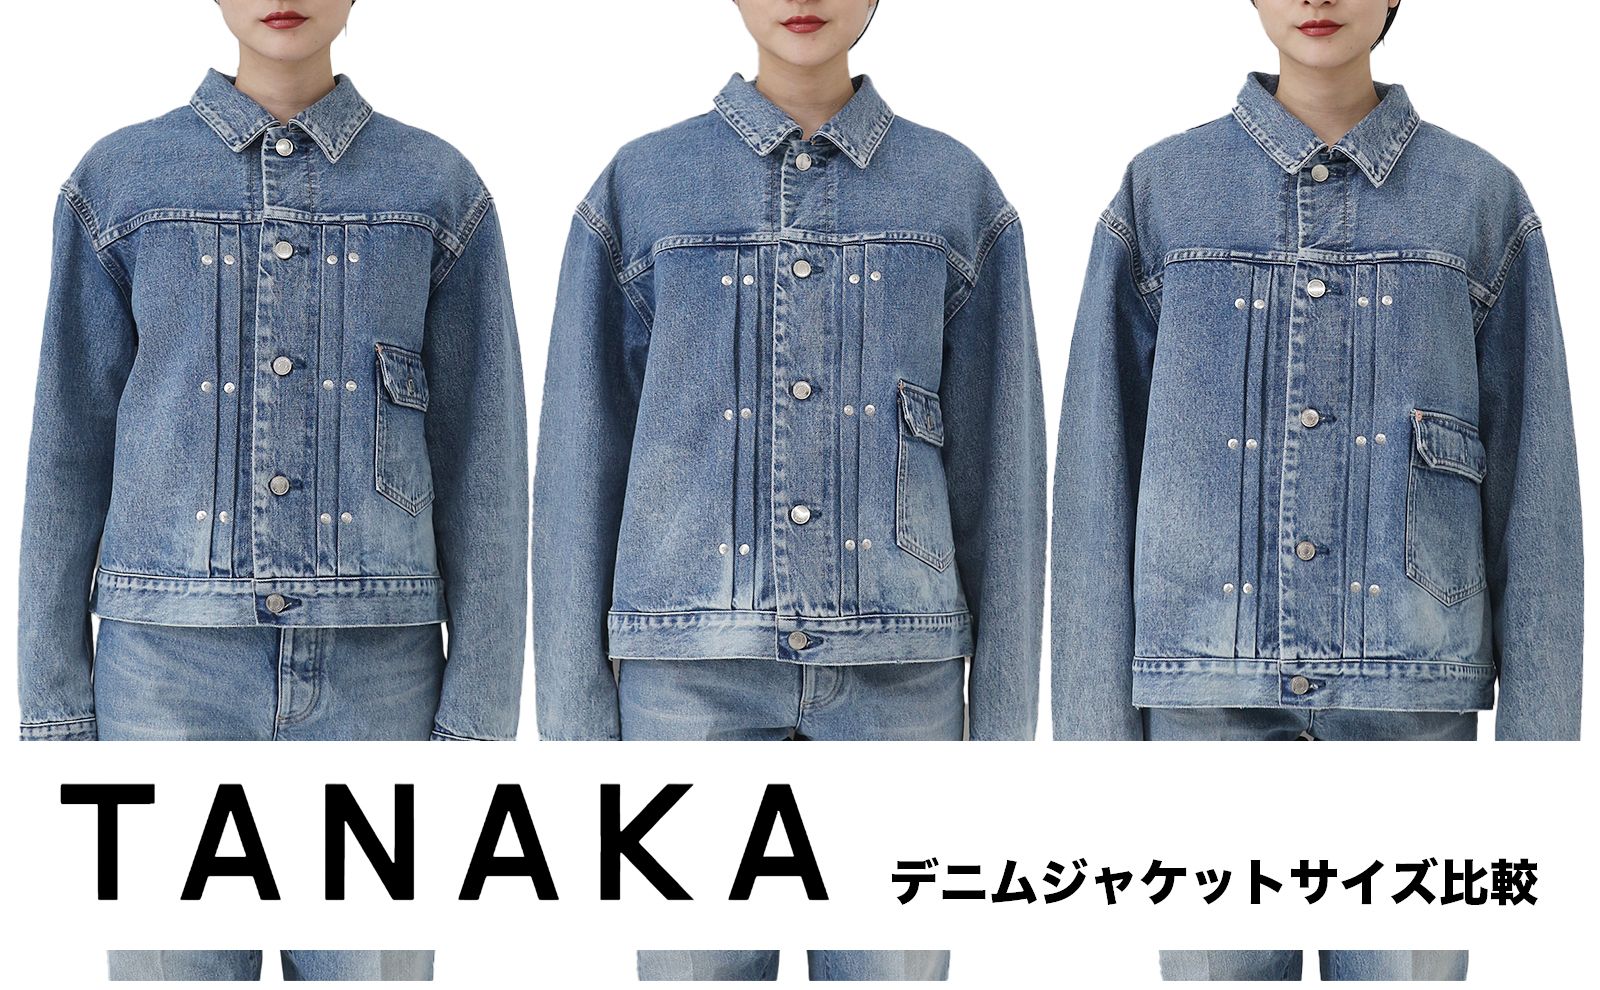 TANAKA デニムジャケットサイズ感 | Sir online store / サー 